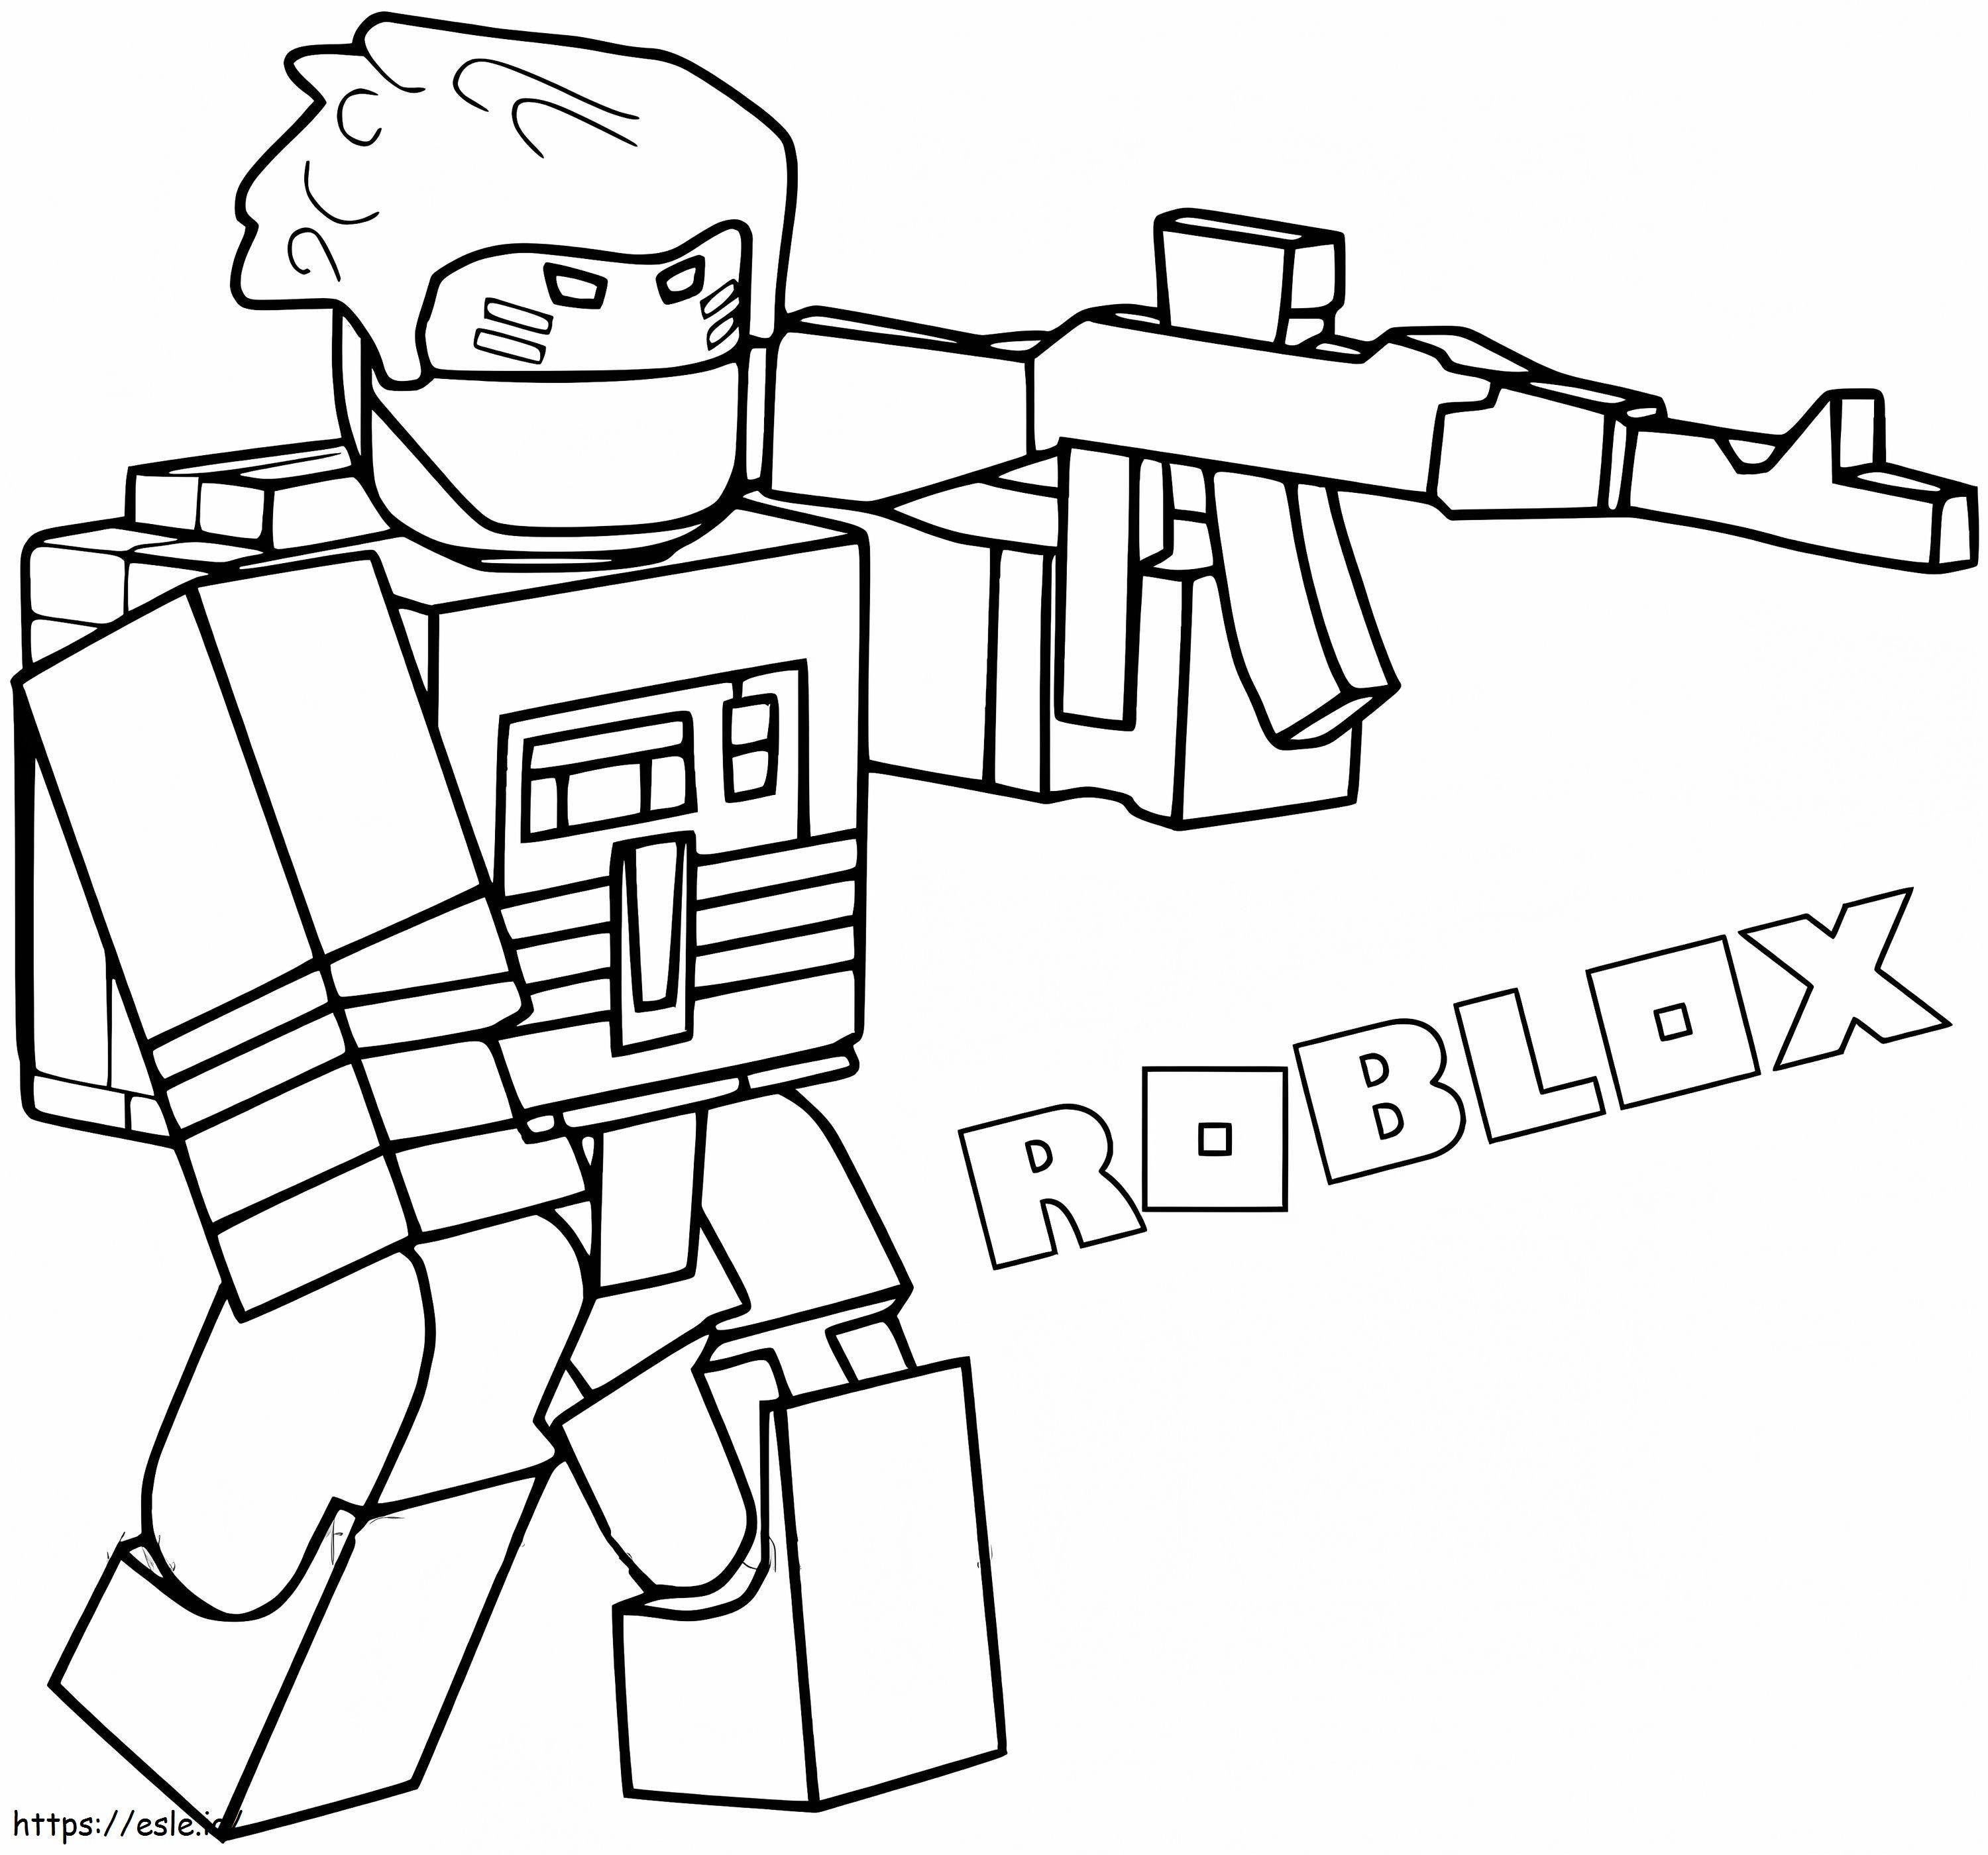 Karakter Roblox Dengan Pistol Gambar Mewarnai